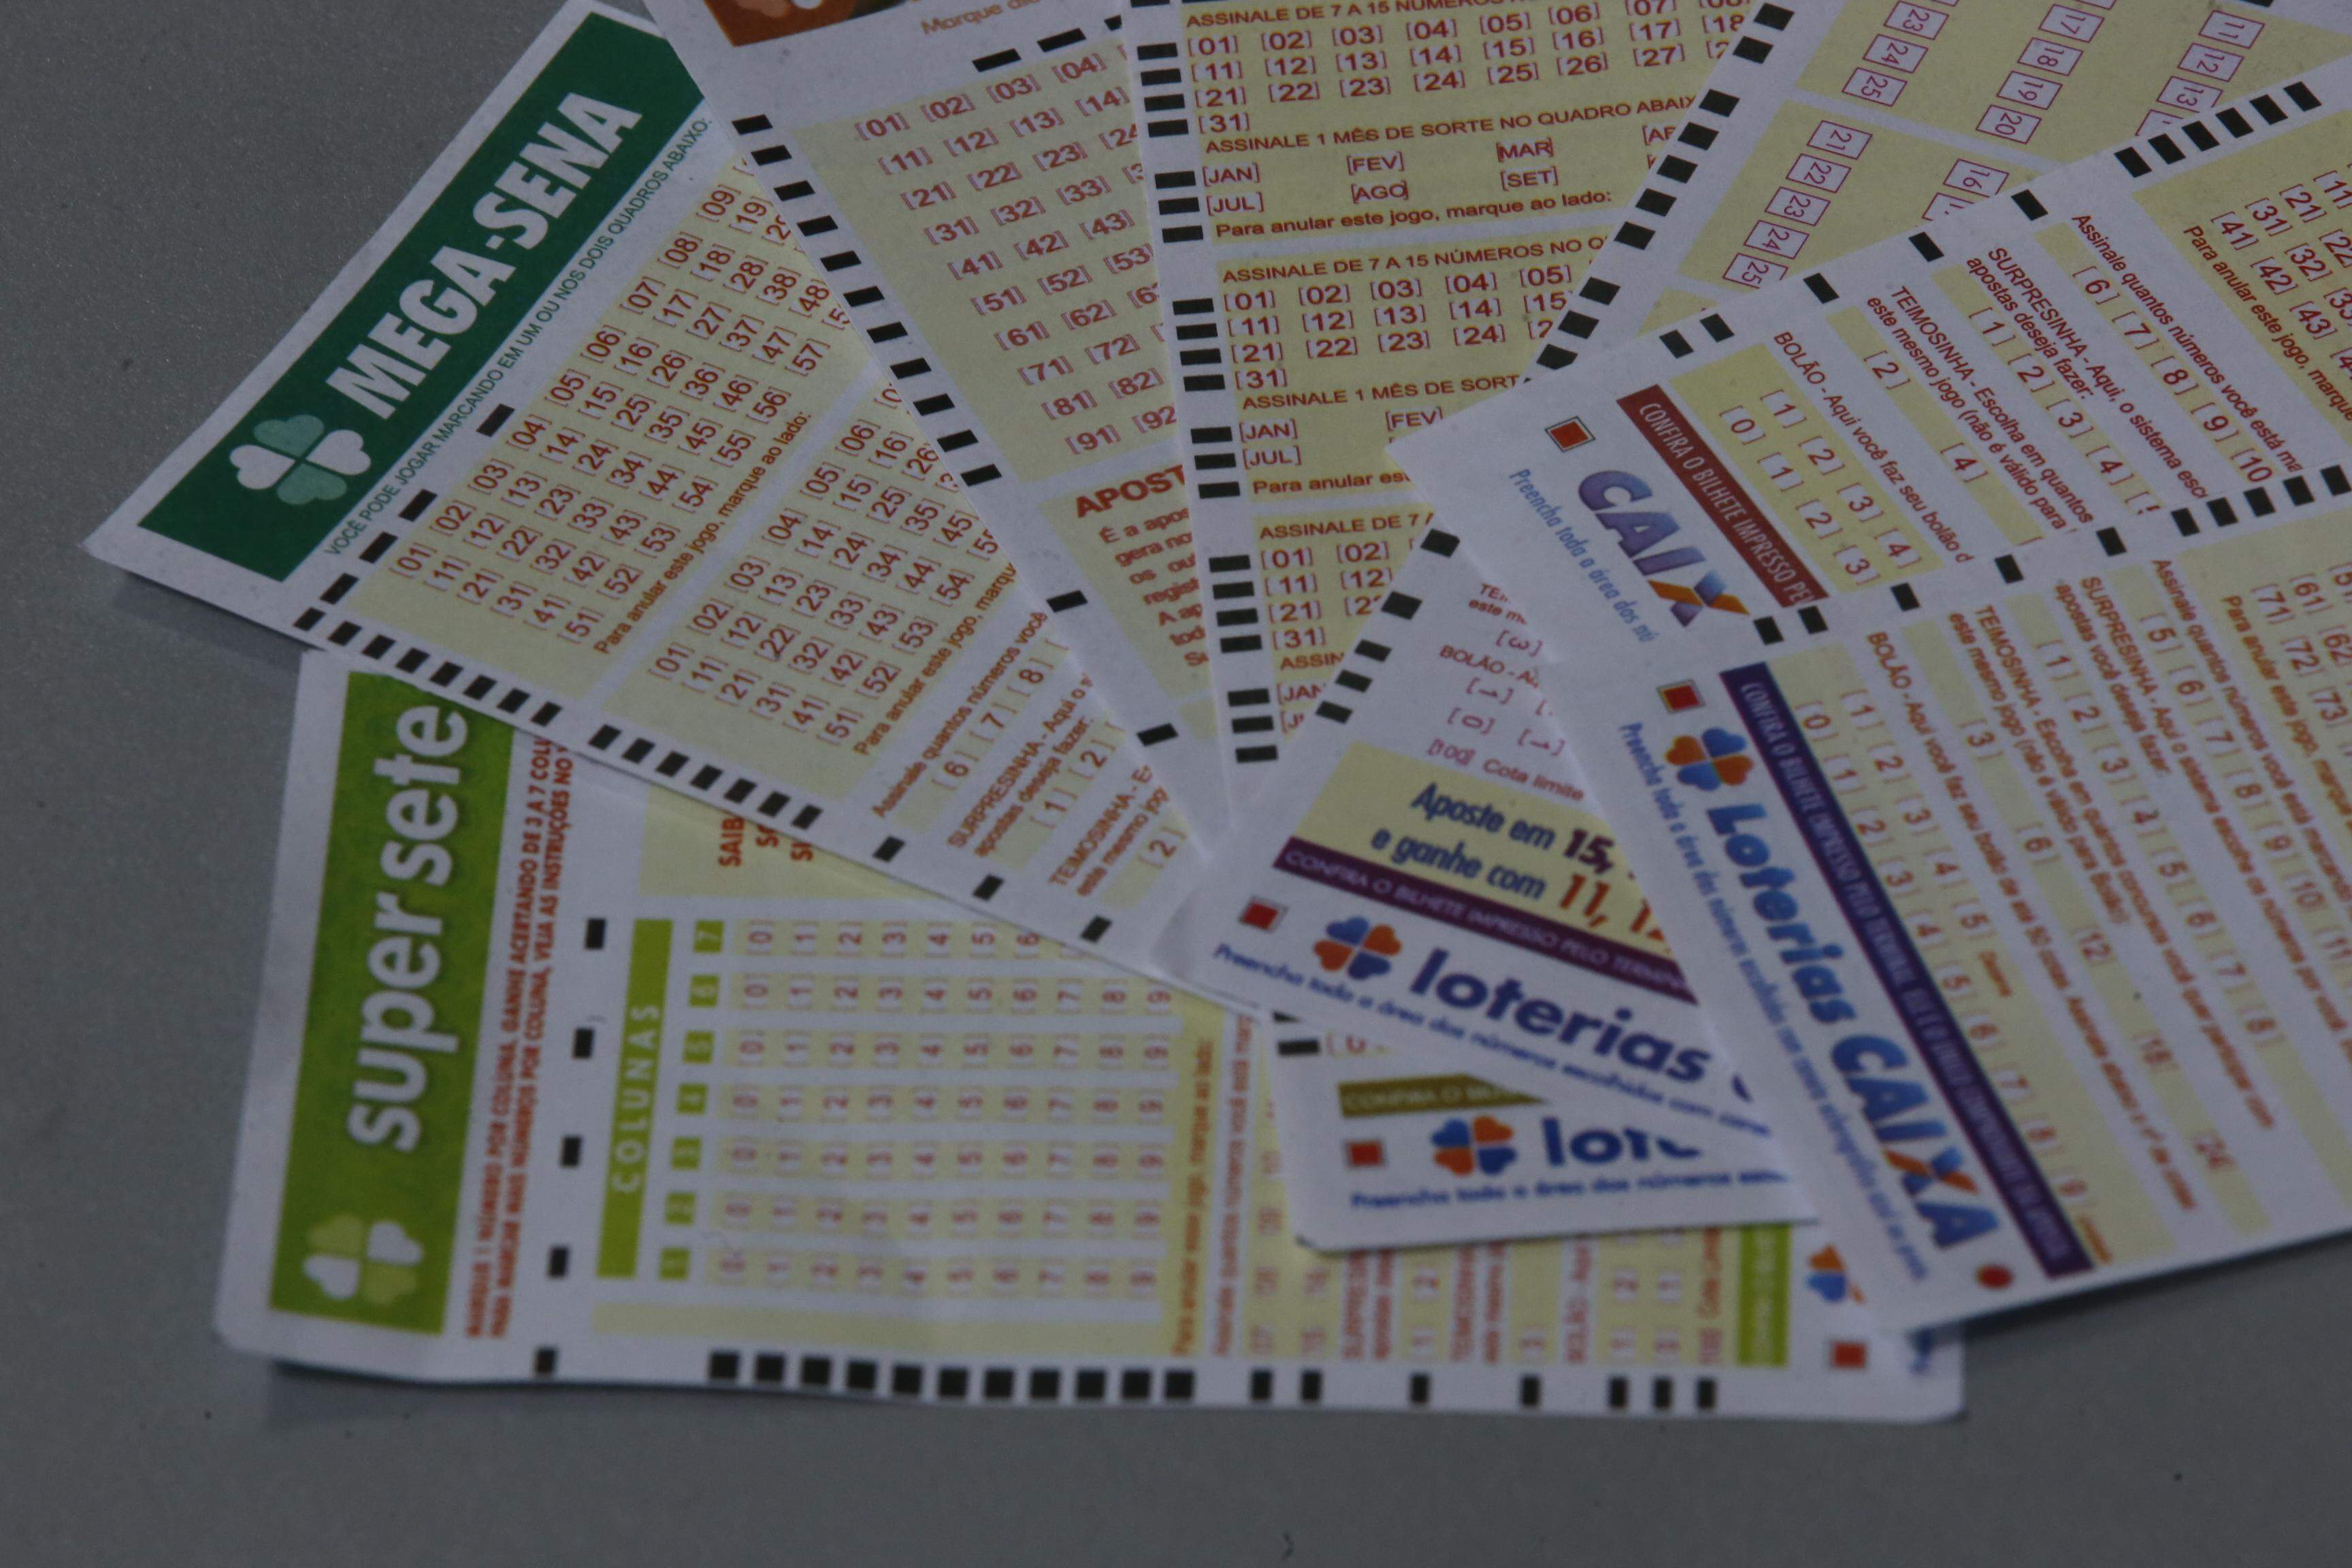 Inteligência artificial aplicada à loteria: dicas para apostar e